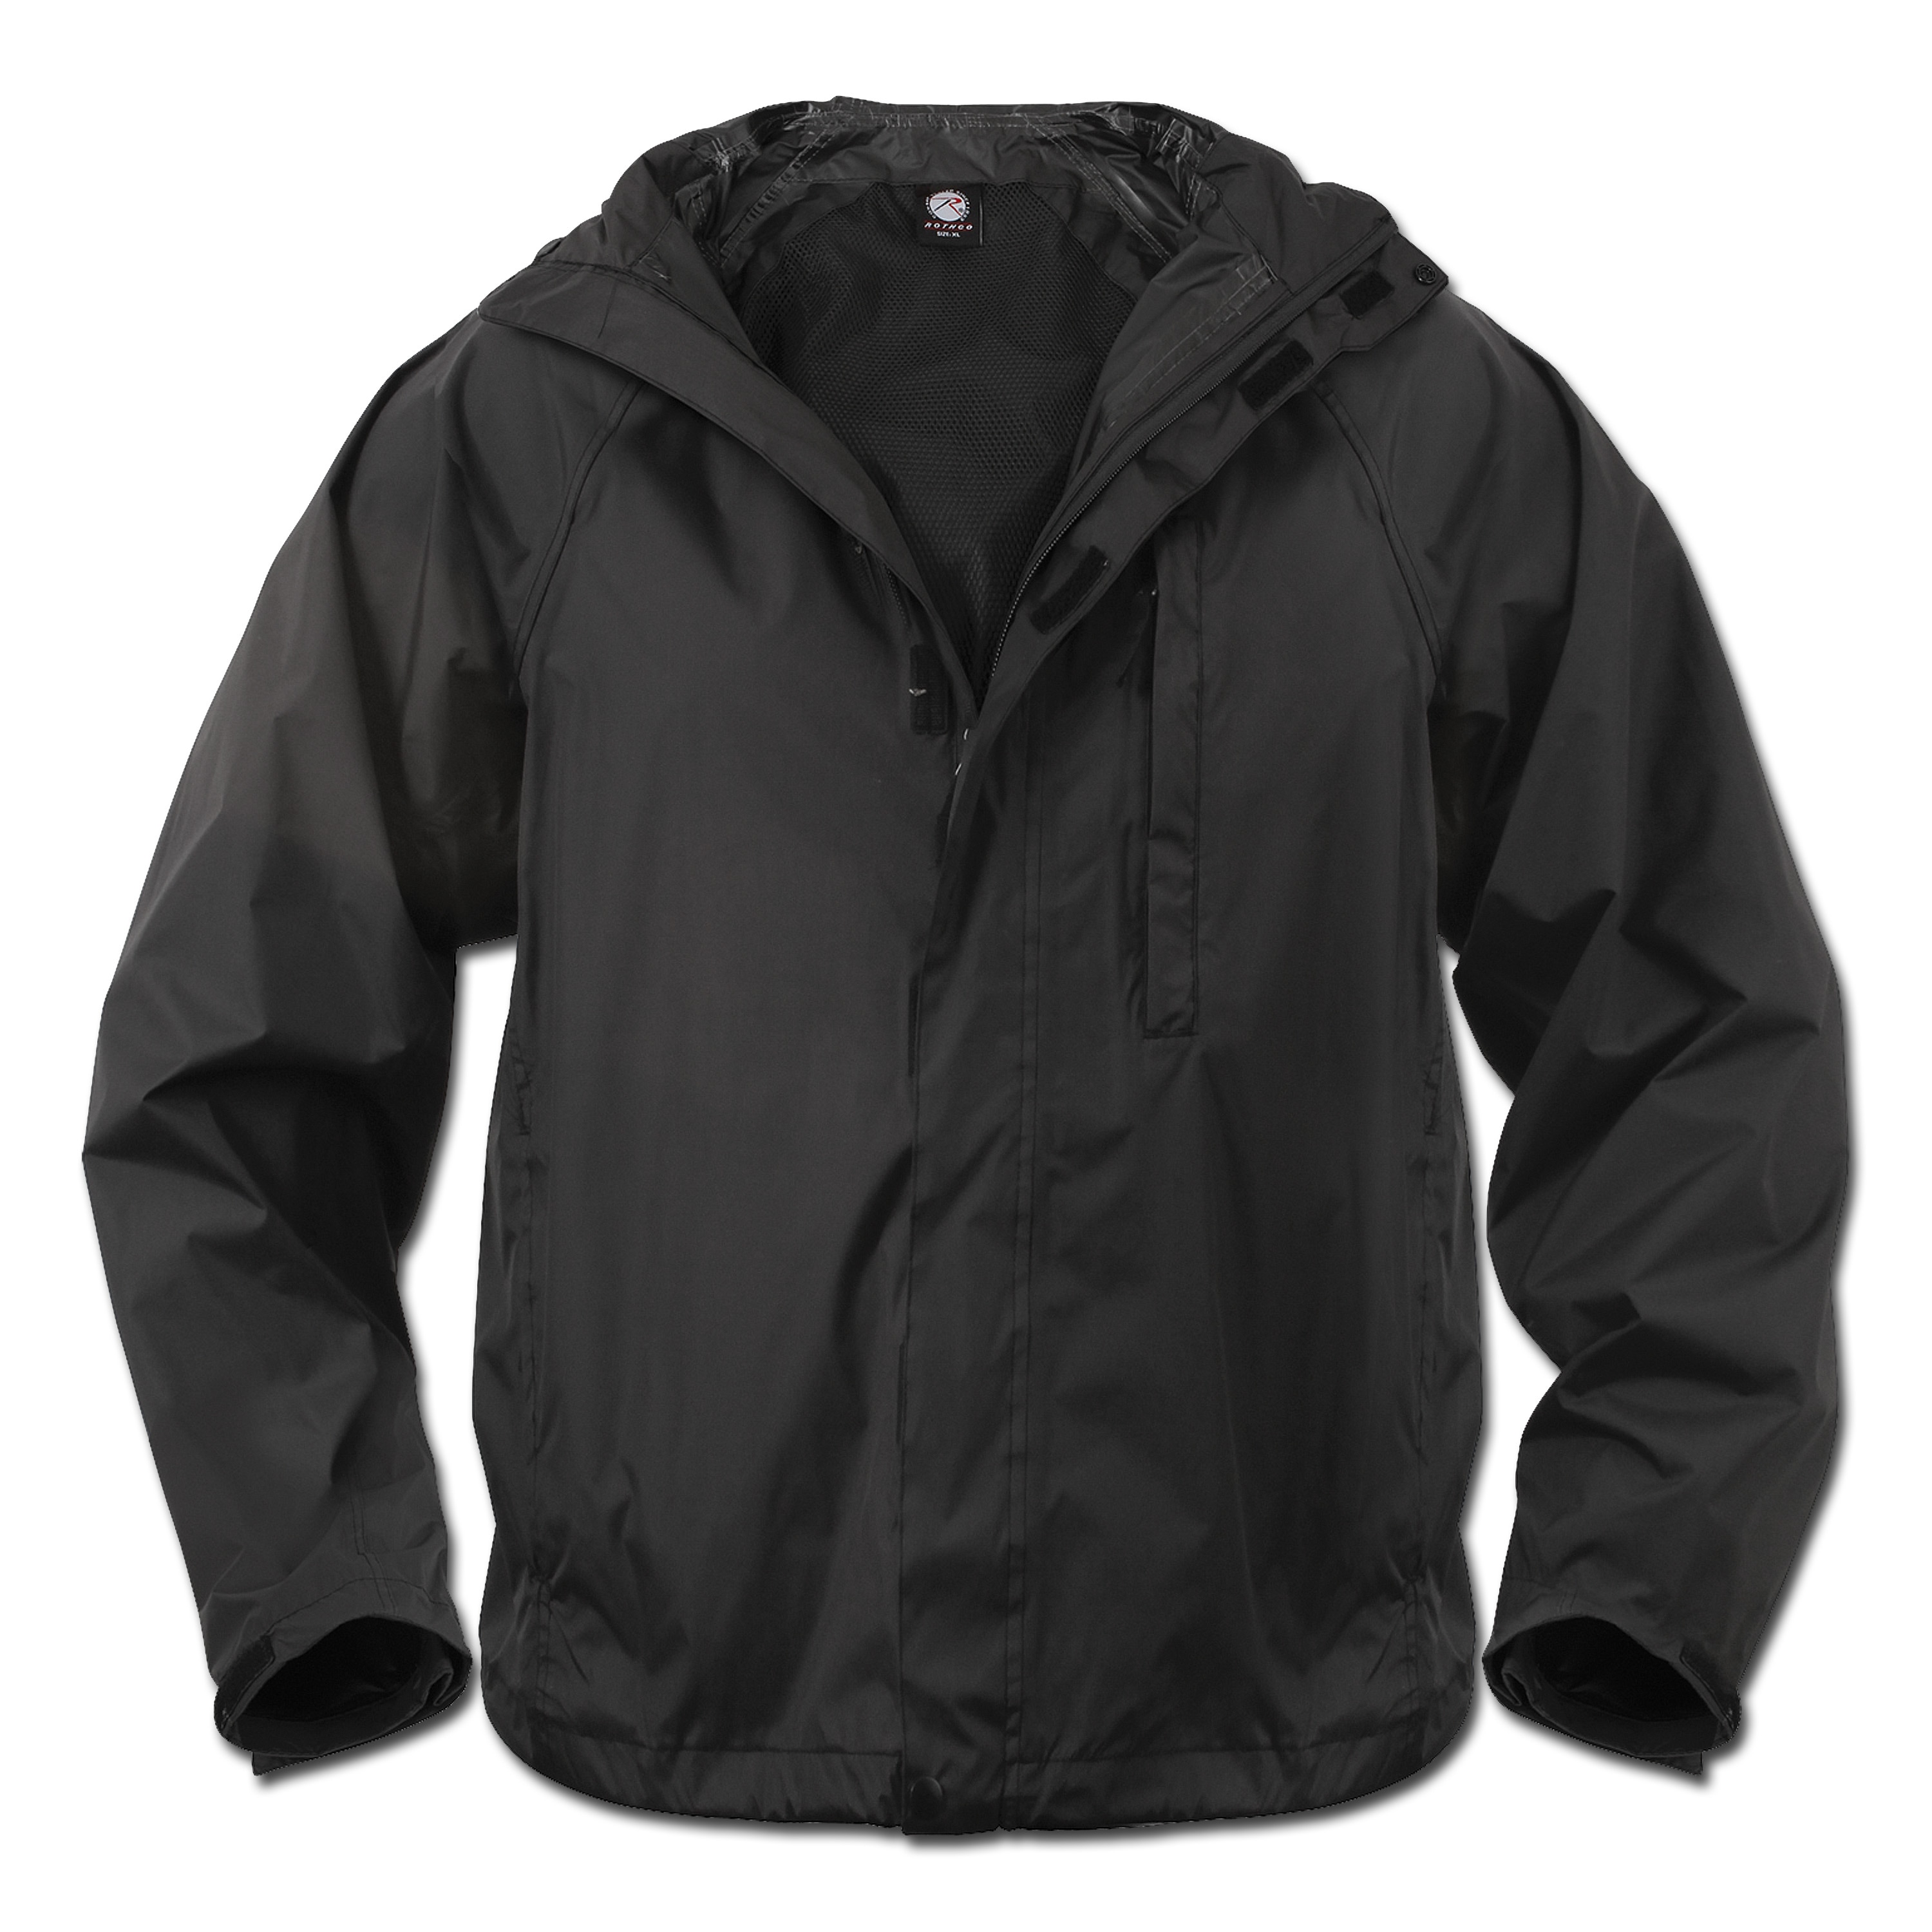 Mens packable waterproof jacket